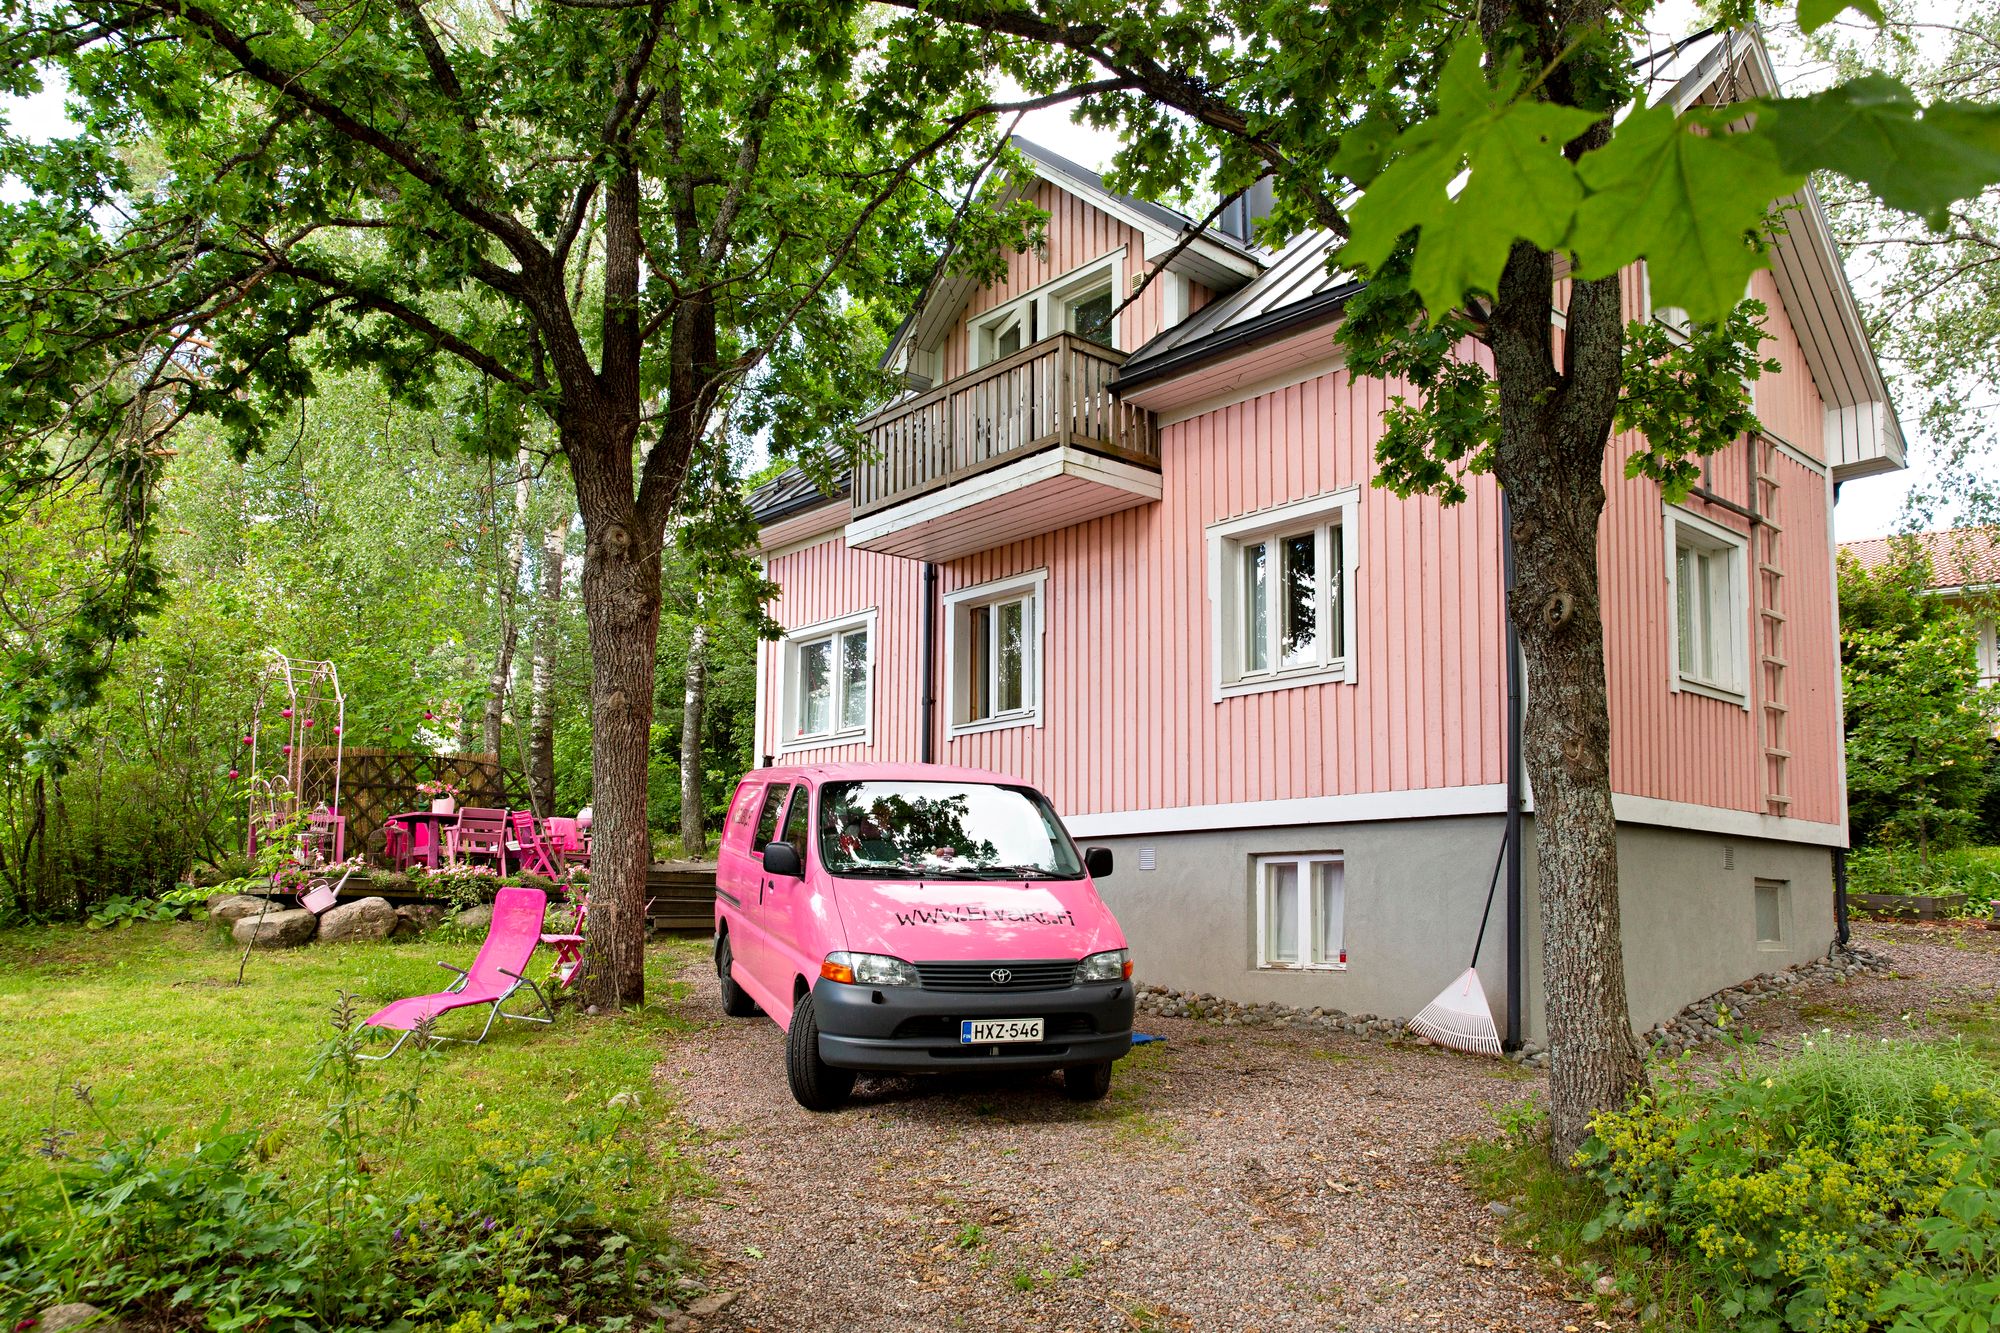 Jo pihalla näkee, että tästä talosta löytyy väriä. Pian alkaa myös pinkin veneen kausi. © Tommi Tuomi